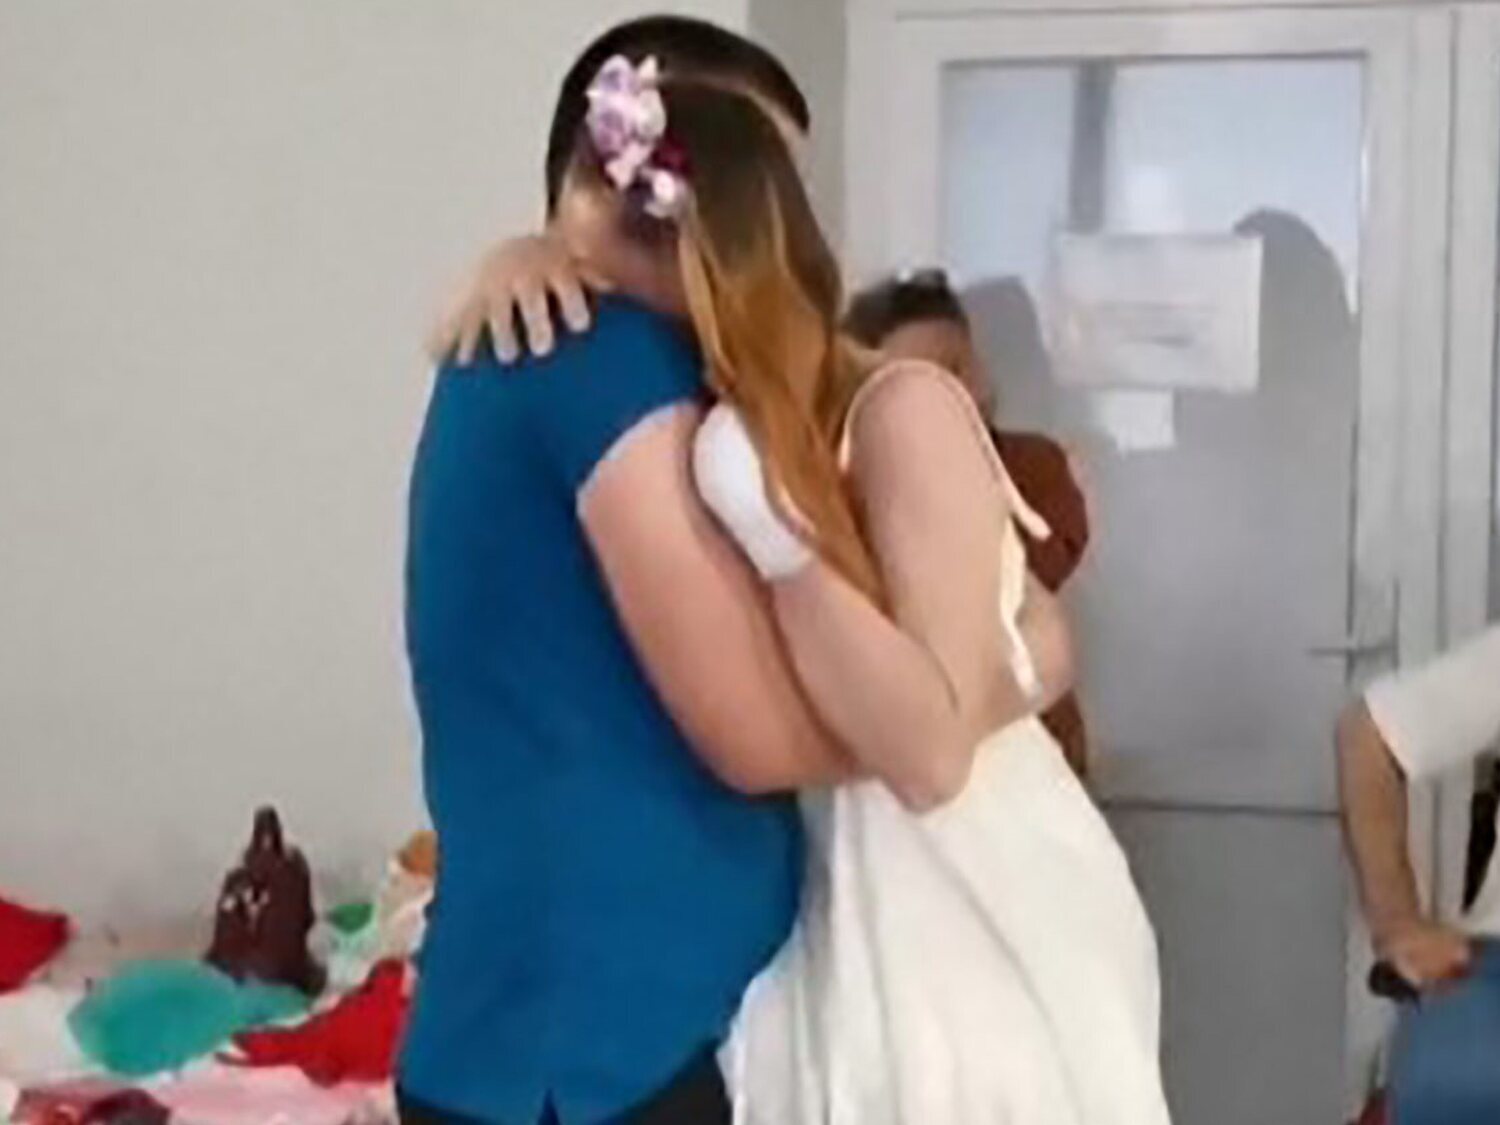 Una enfermera ucraniana que perdió las piernas en la guerra se casa con su novio y comparte el baile nupcial